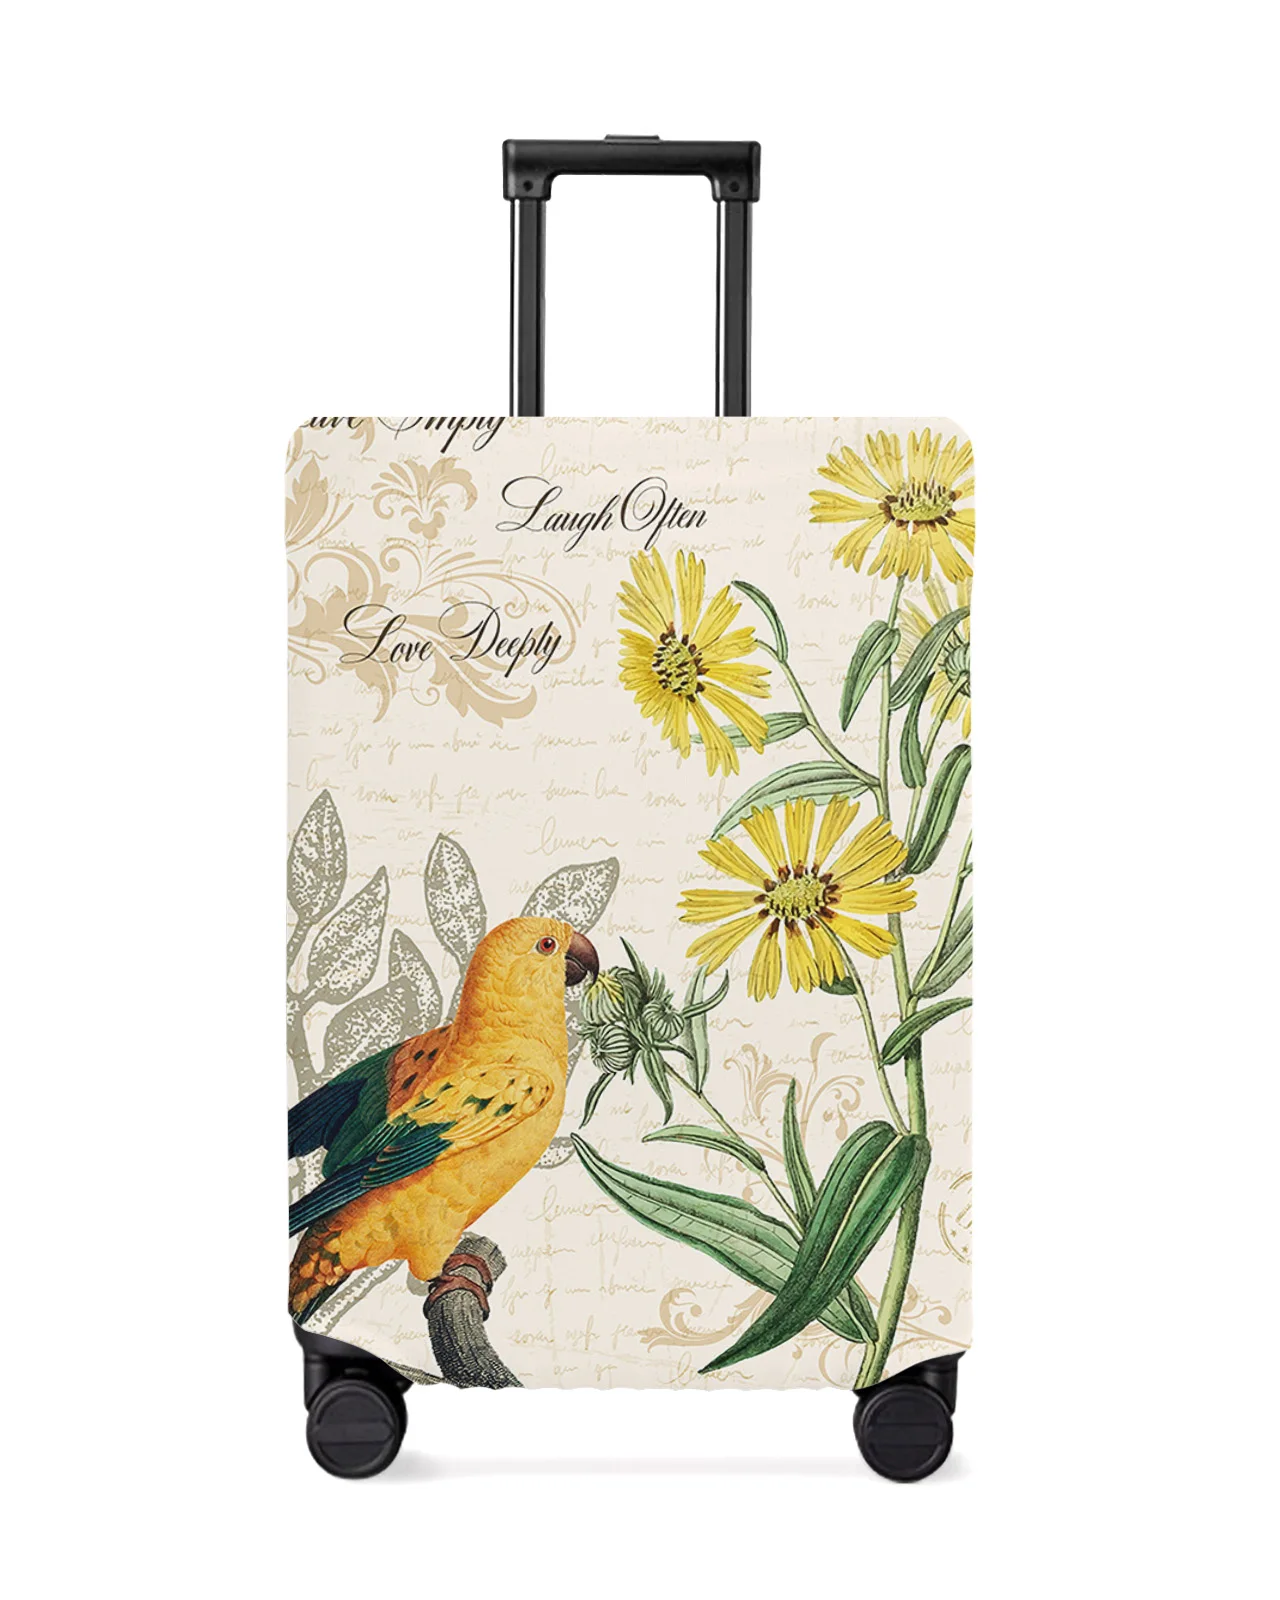 juste-de-bagage-de-voyage-retro-perroquet-jaune-et-tournesol-housse-de-bagage-elastique-etui-anti-poussiere-accessoires-de-valise